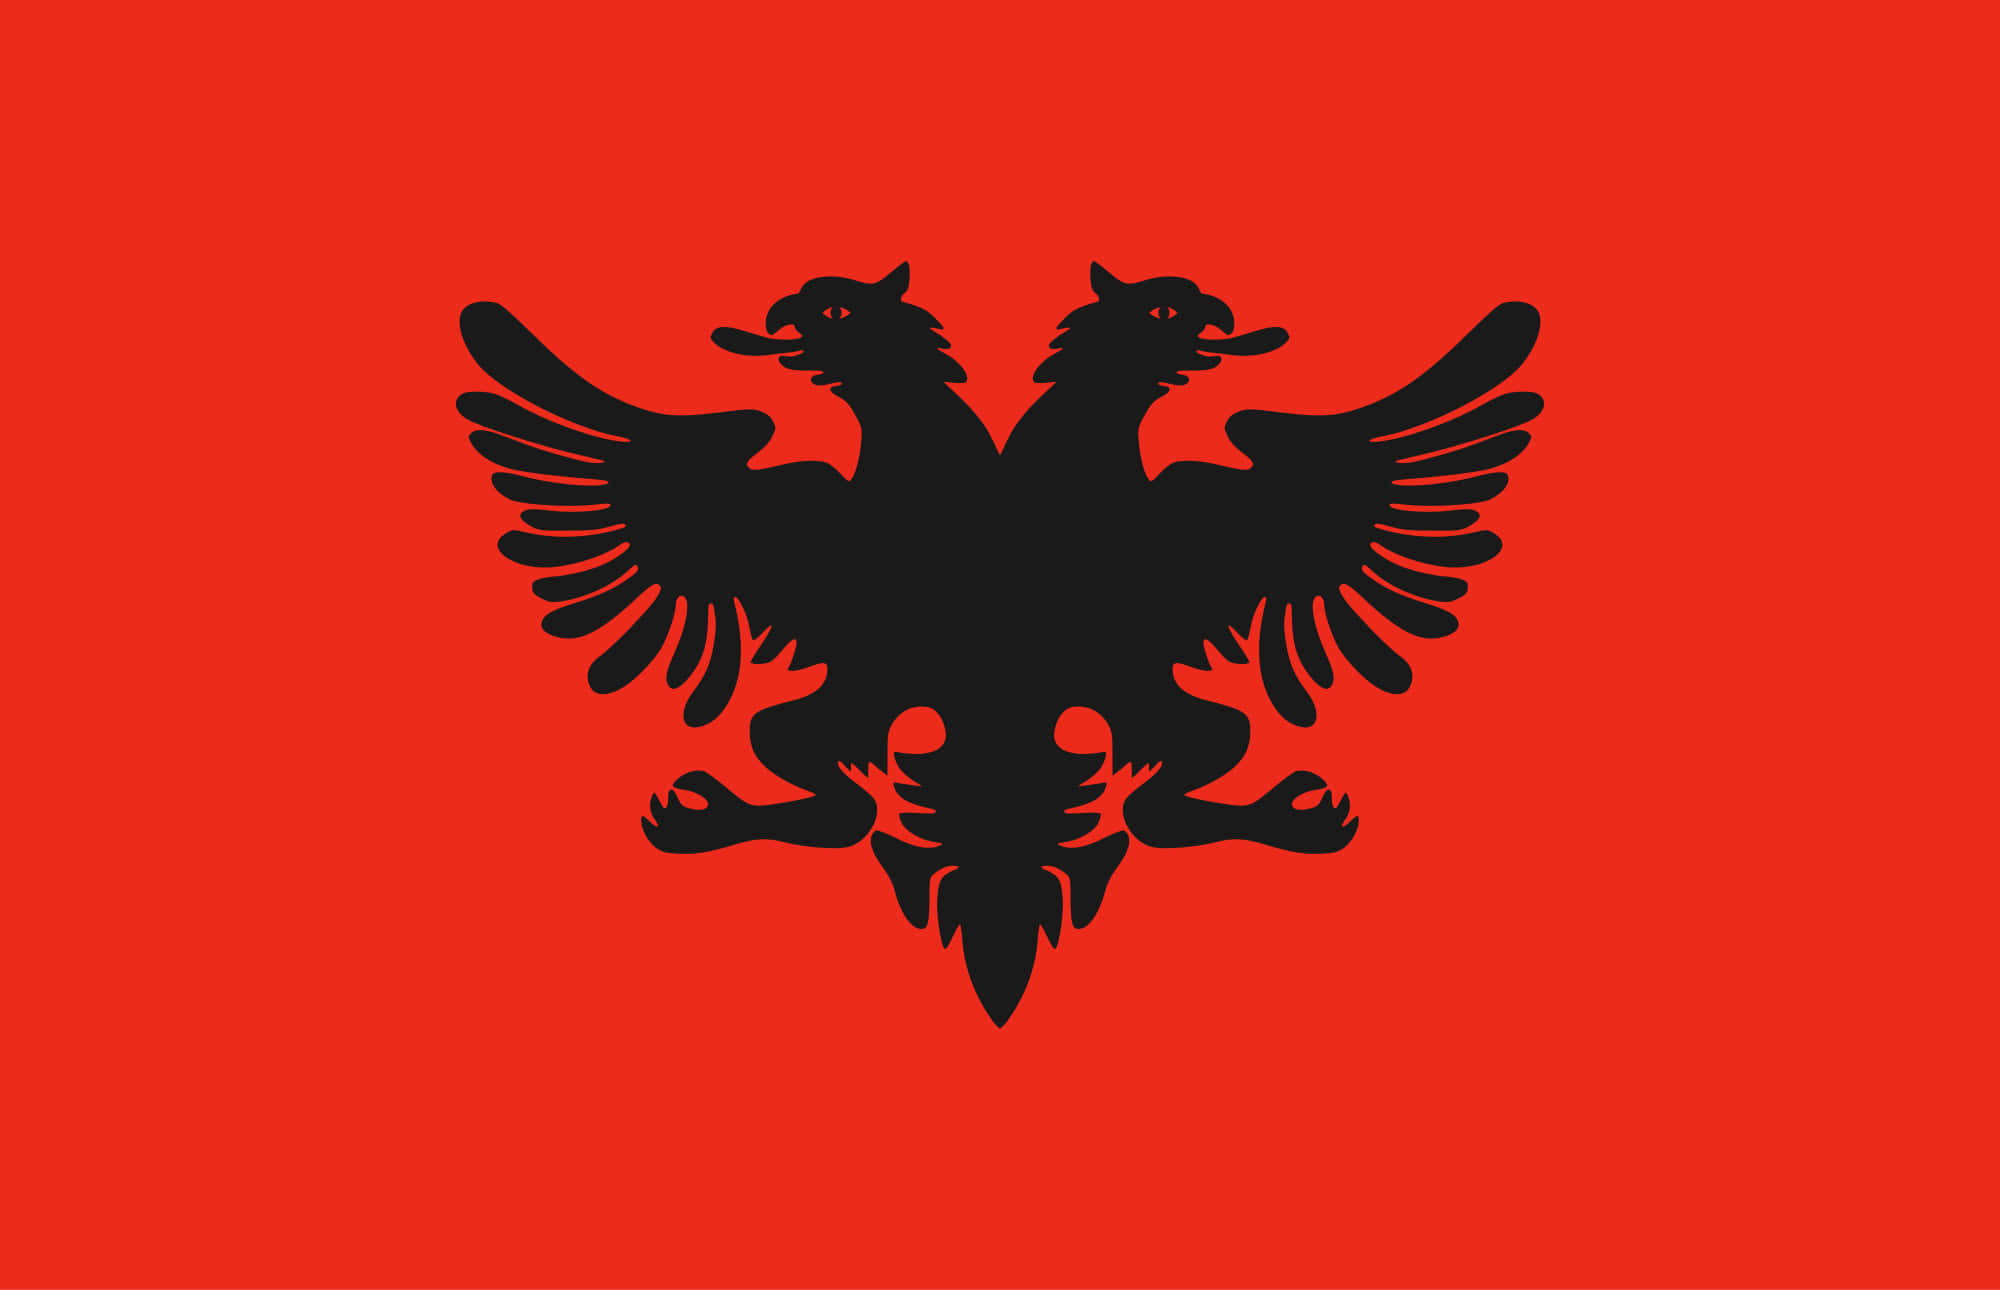 Detalbanske Flag Med To Ørne På En Rød Baggrund